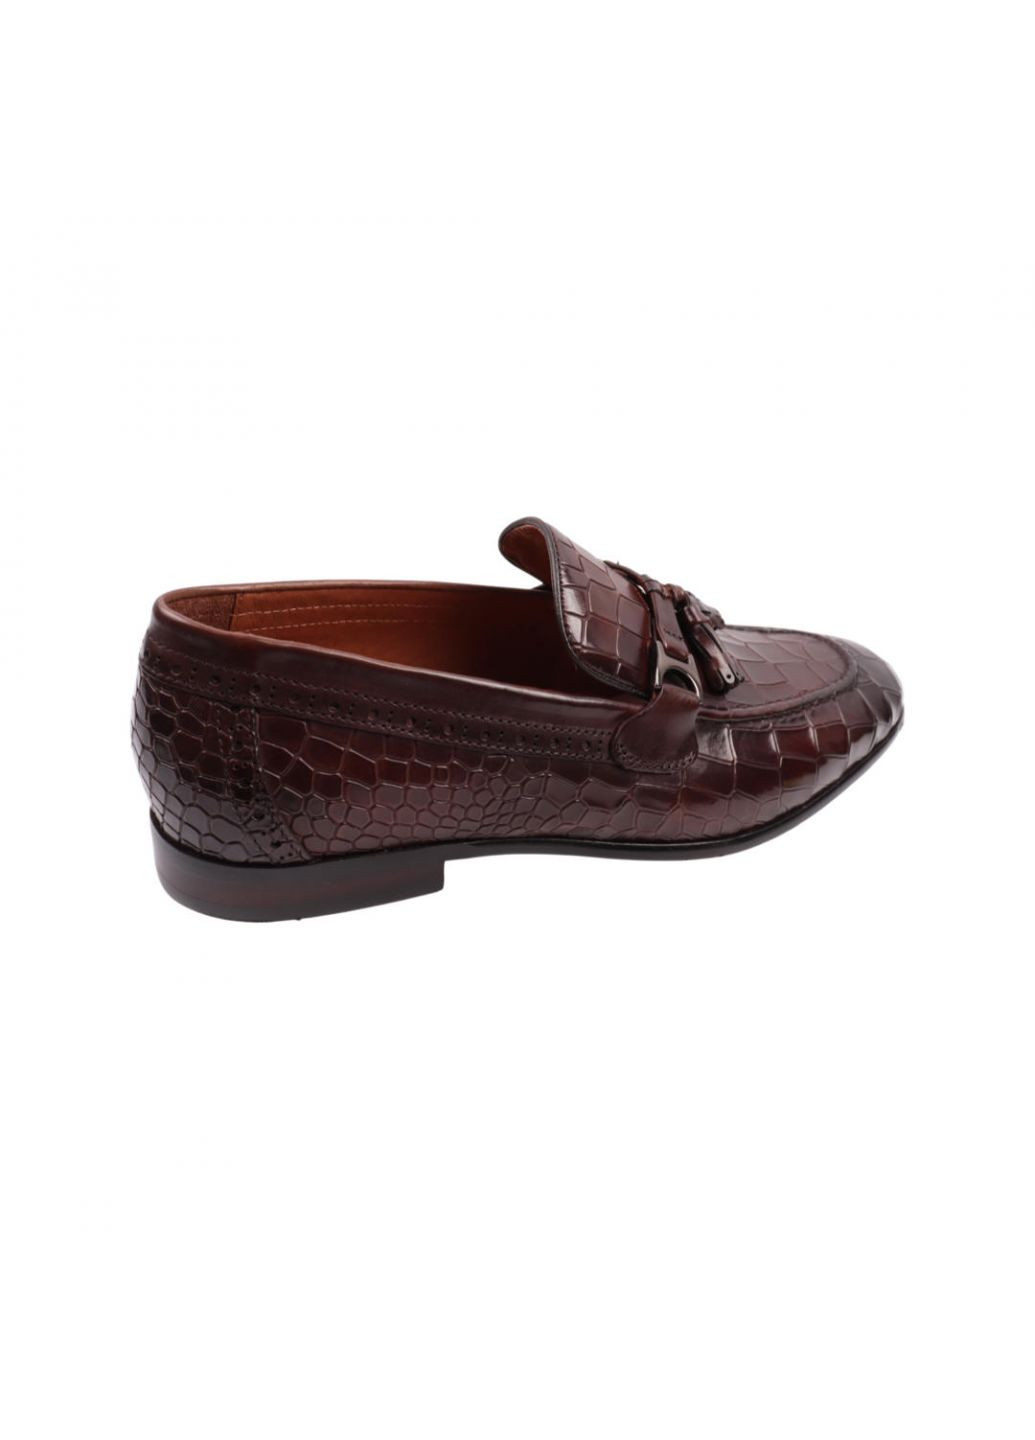 Туфлі чоловічі Lido Marinozi коричневі натуральна шкіра Lido Marinozzi 279-22dt (257439911)